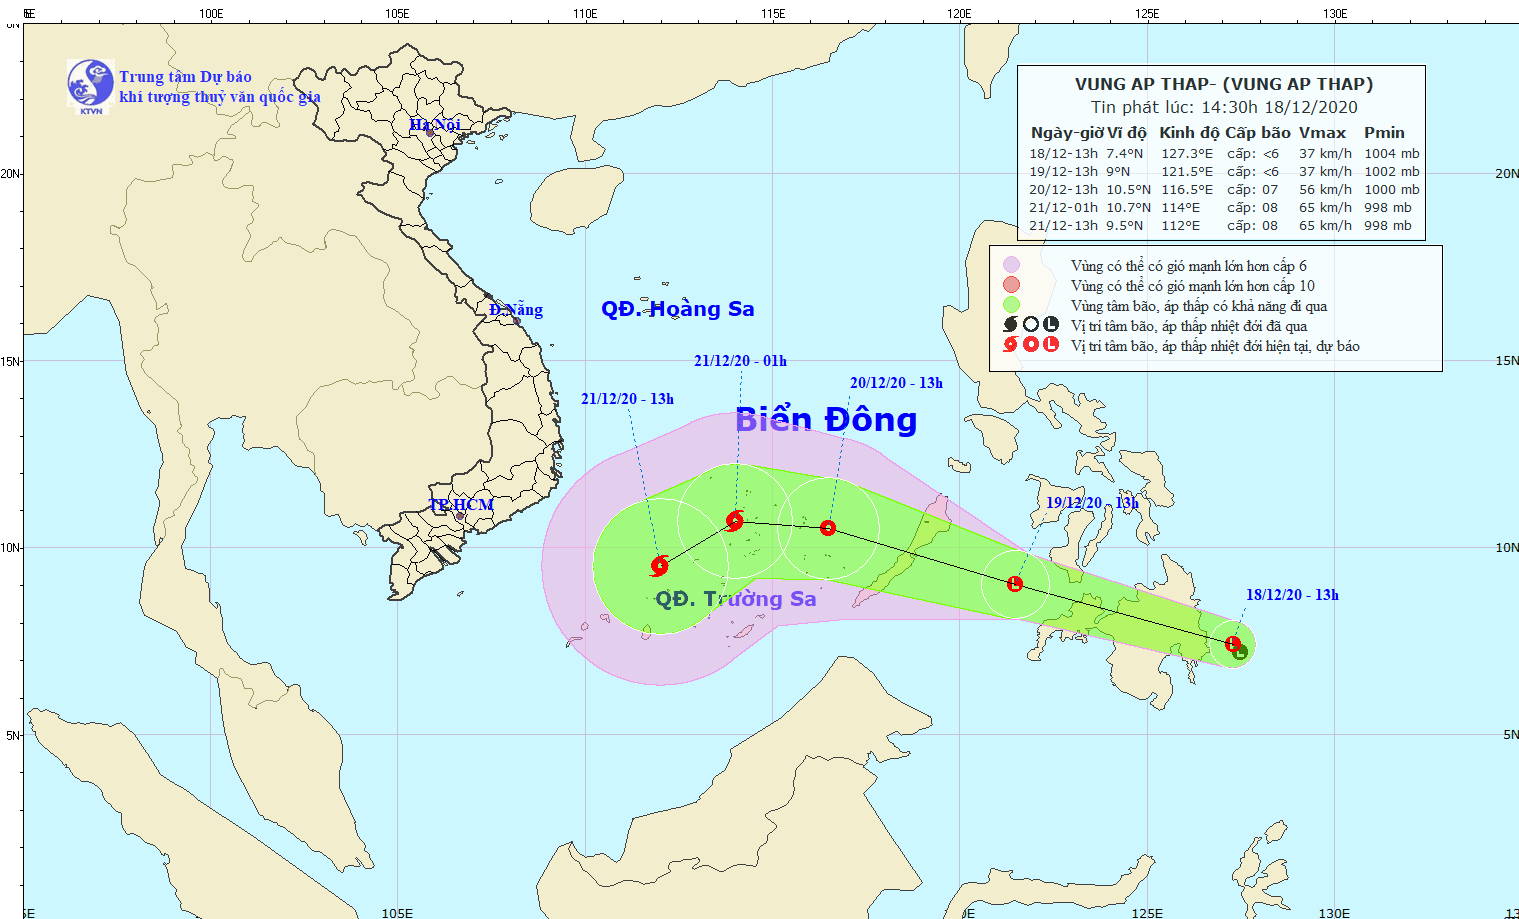 Xuất hiện áp thấp gần Biển Đông, có khả năng mạnh lên thành bão - Ảnh 1.